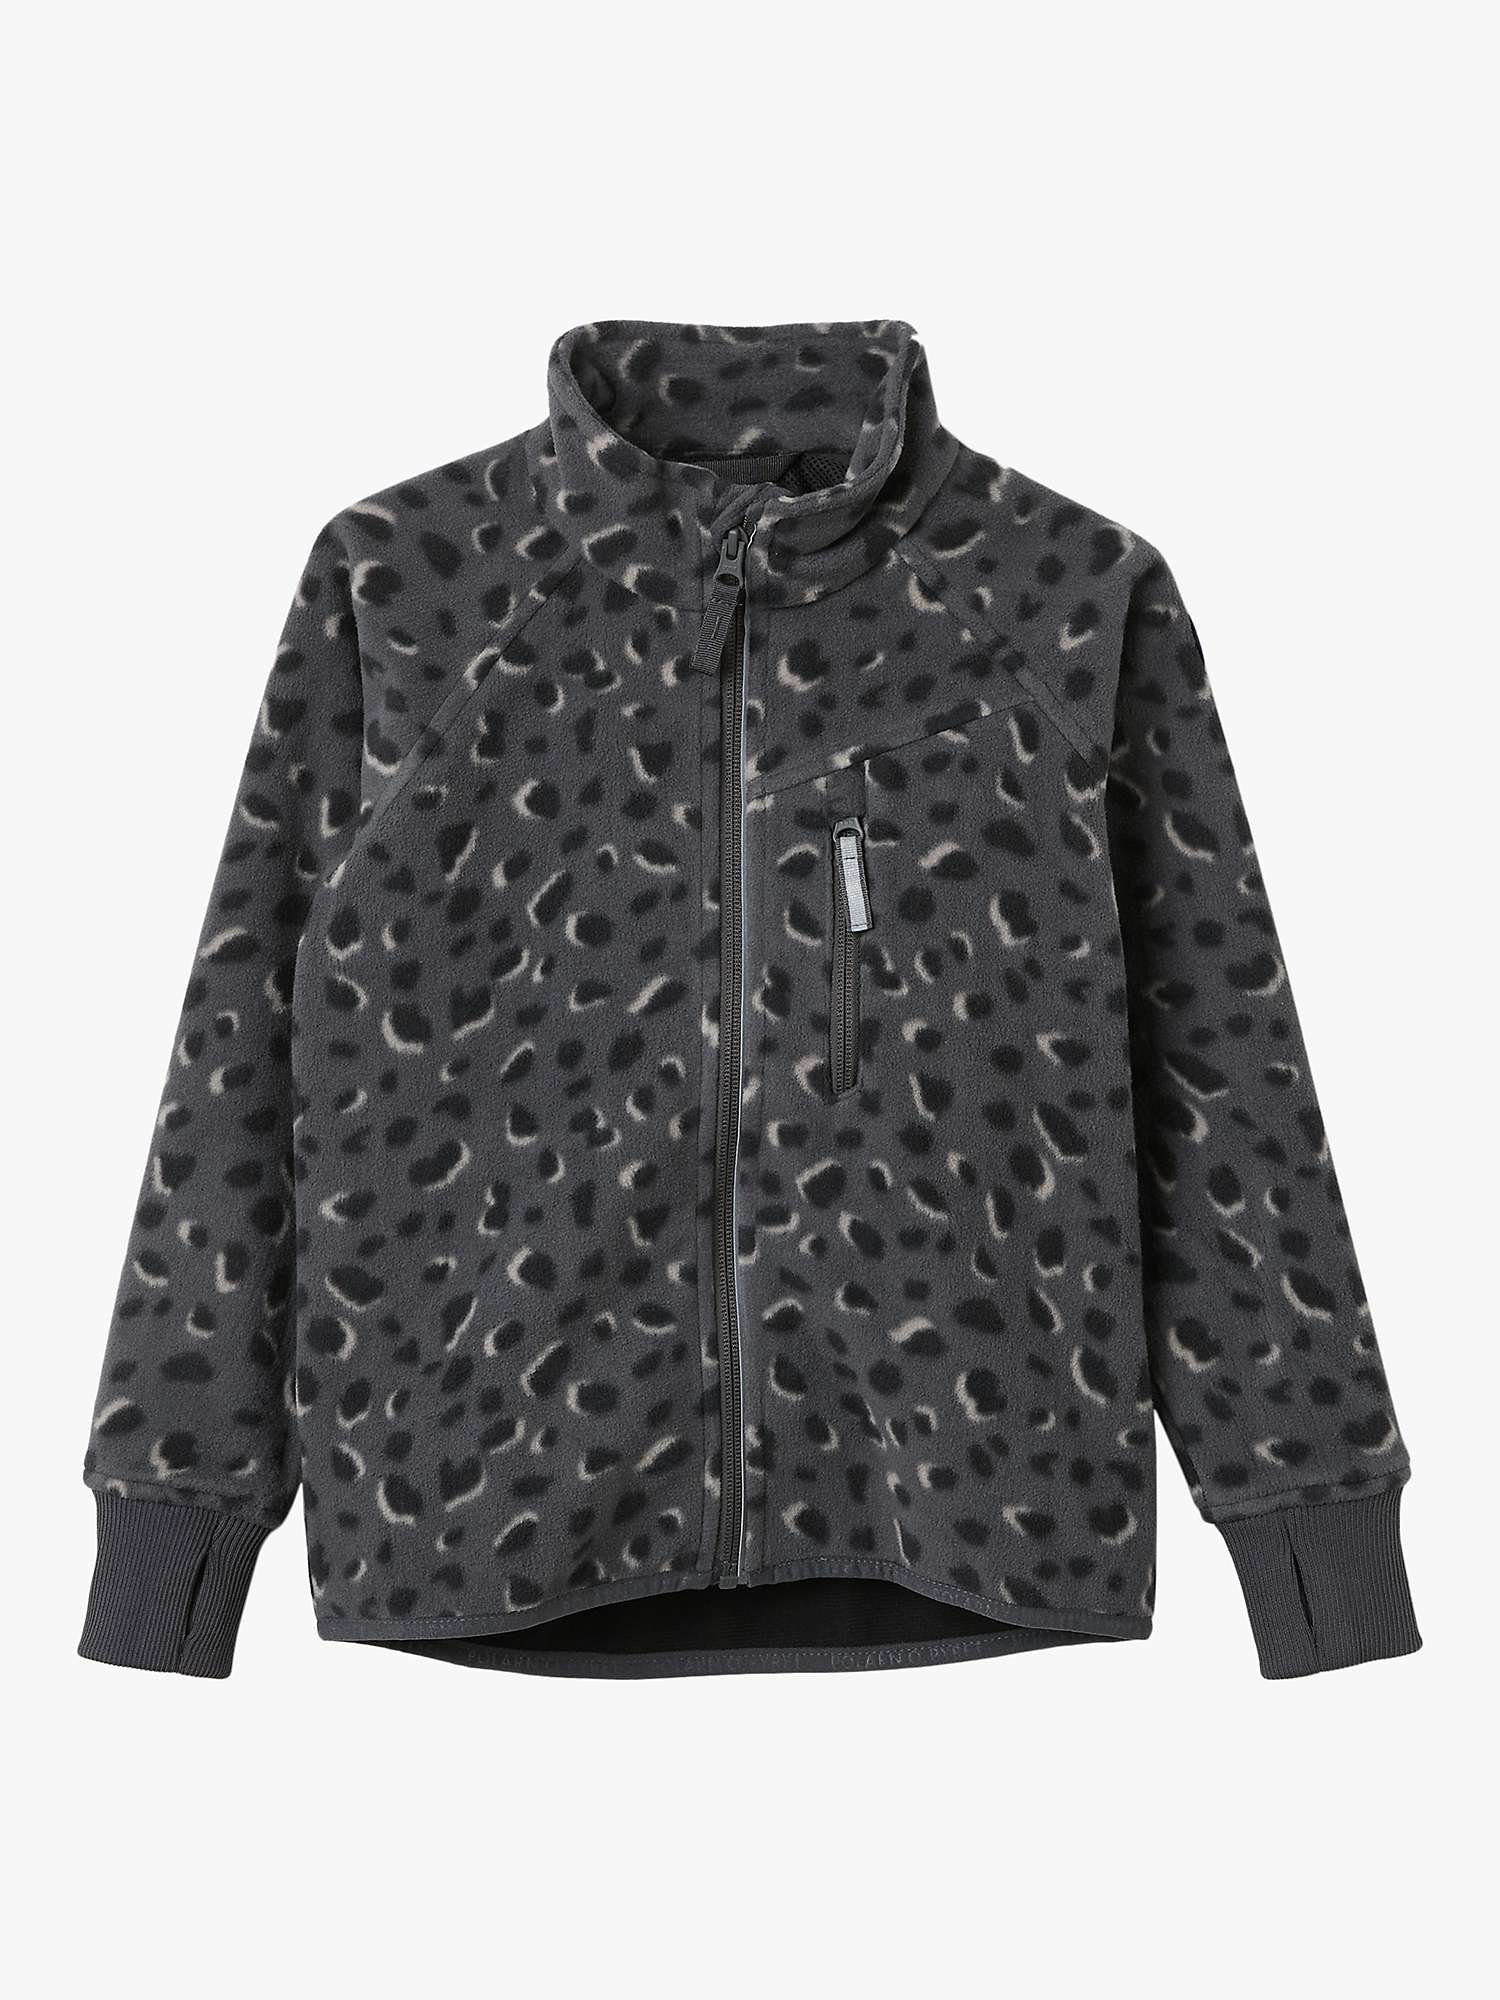 Buy Polarn O. Pyret Kids' Cheetah Fleece Jacket, Grey Online at johnlewis.com